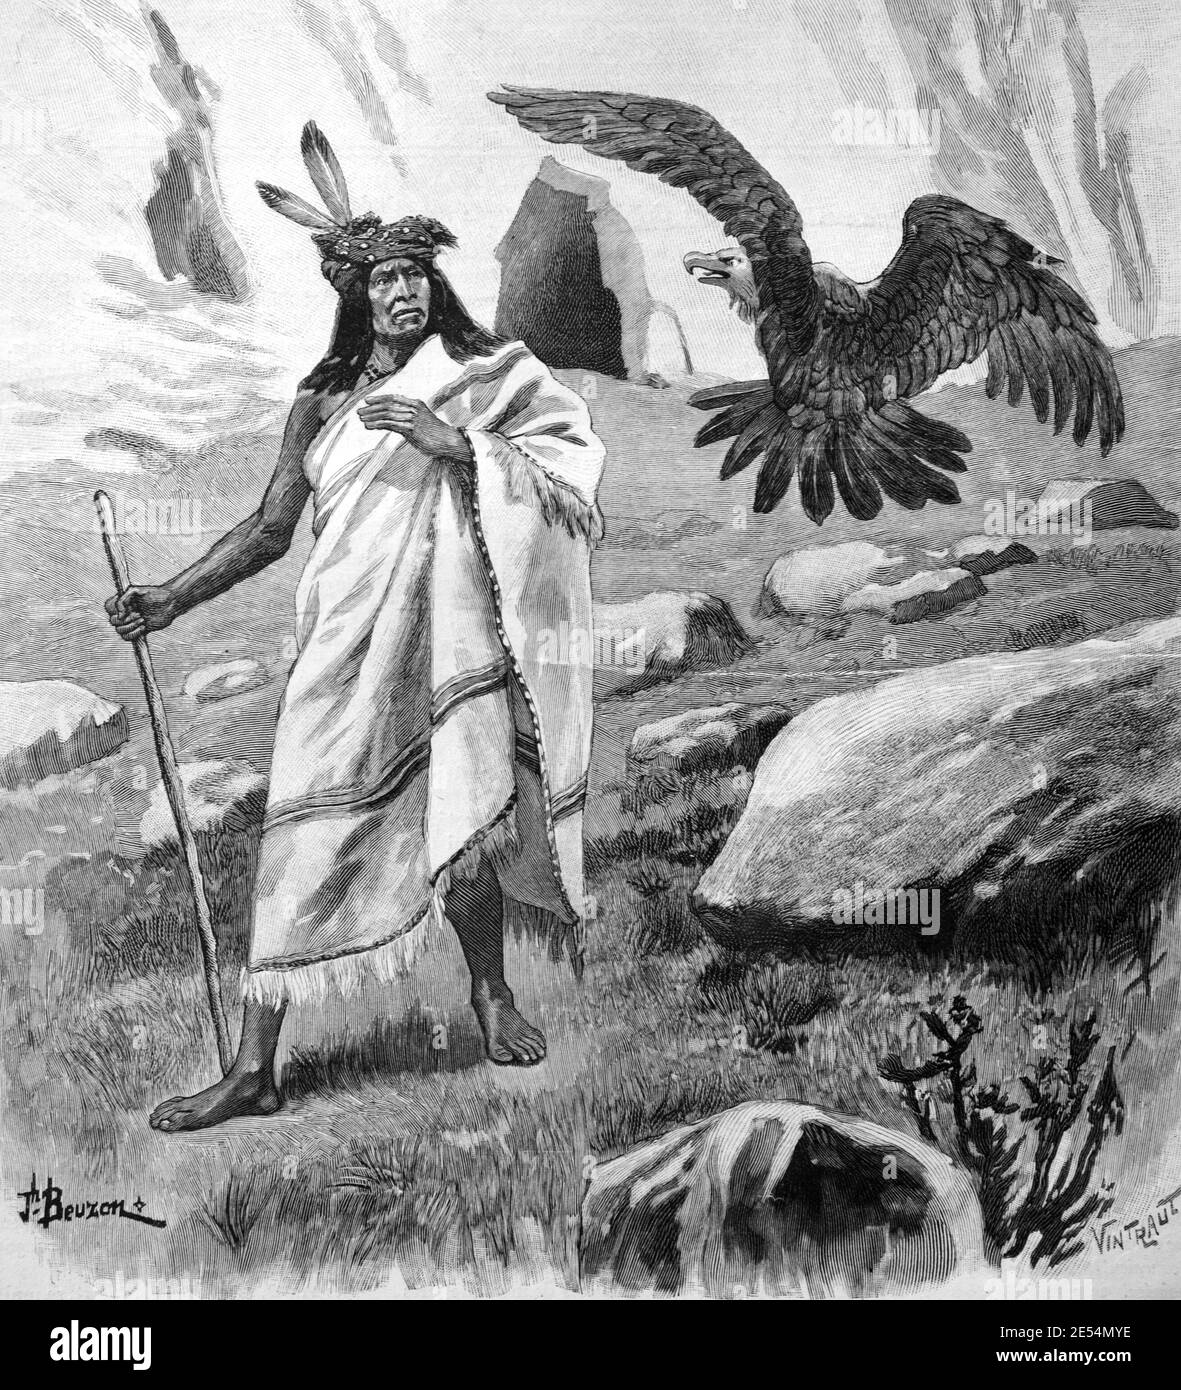 Eagle Foradvierten una tormenta al indio Pima o nativo americano En Arizona Estados Unidos o EE.UU. 1904 Vintage Illustration o. Grabado Foto de stock